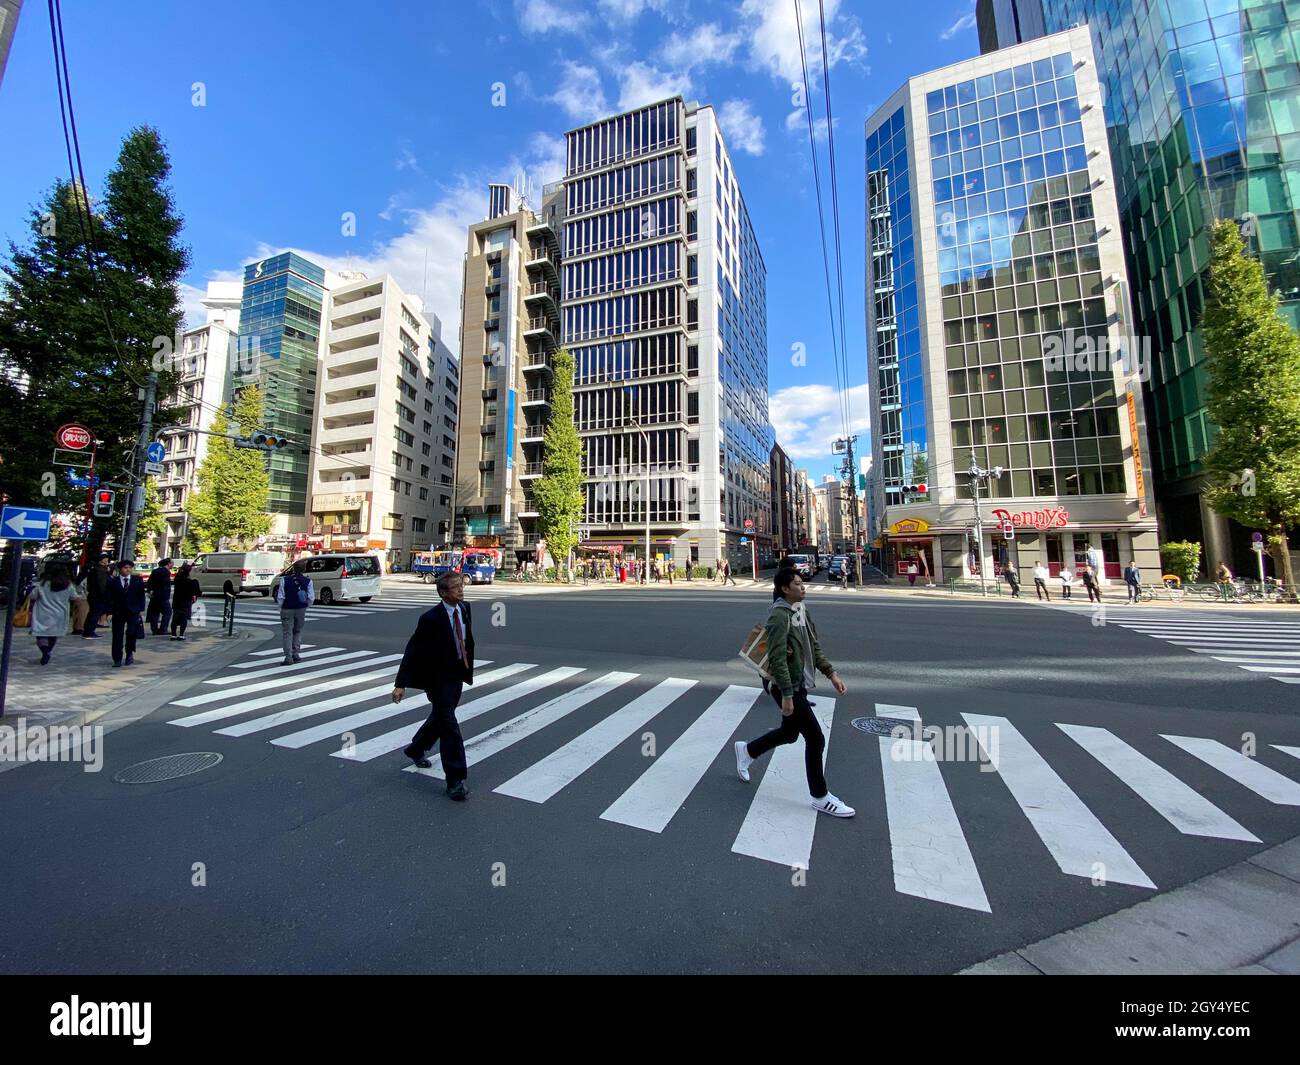 Tokio, Japón - 20 de noviembre de 2019: Cruce por la calle para mayor seguridad cuando la gente cruza la calle, con marcas blancas de cruce Foto de stock